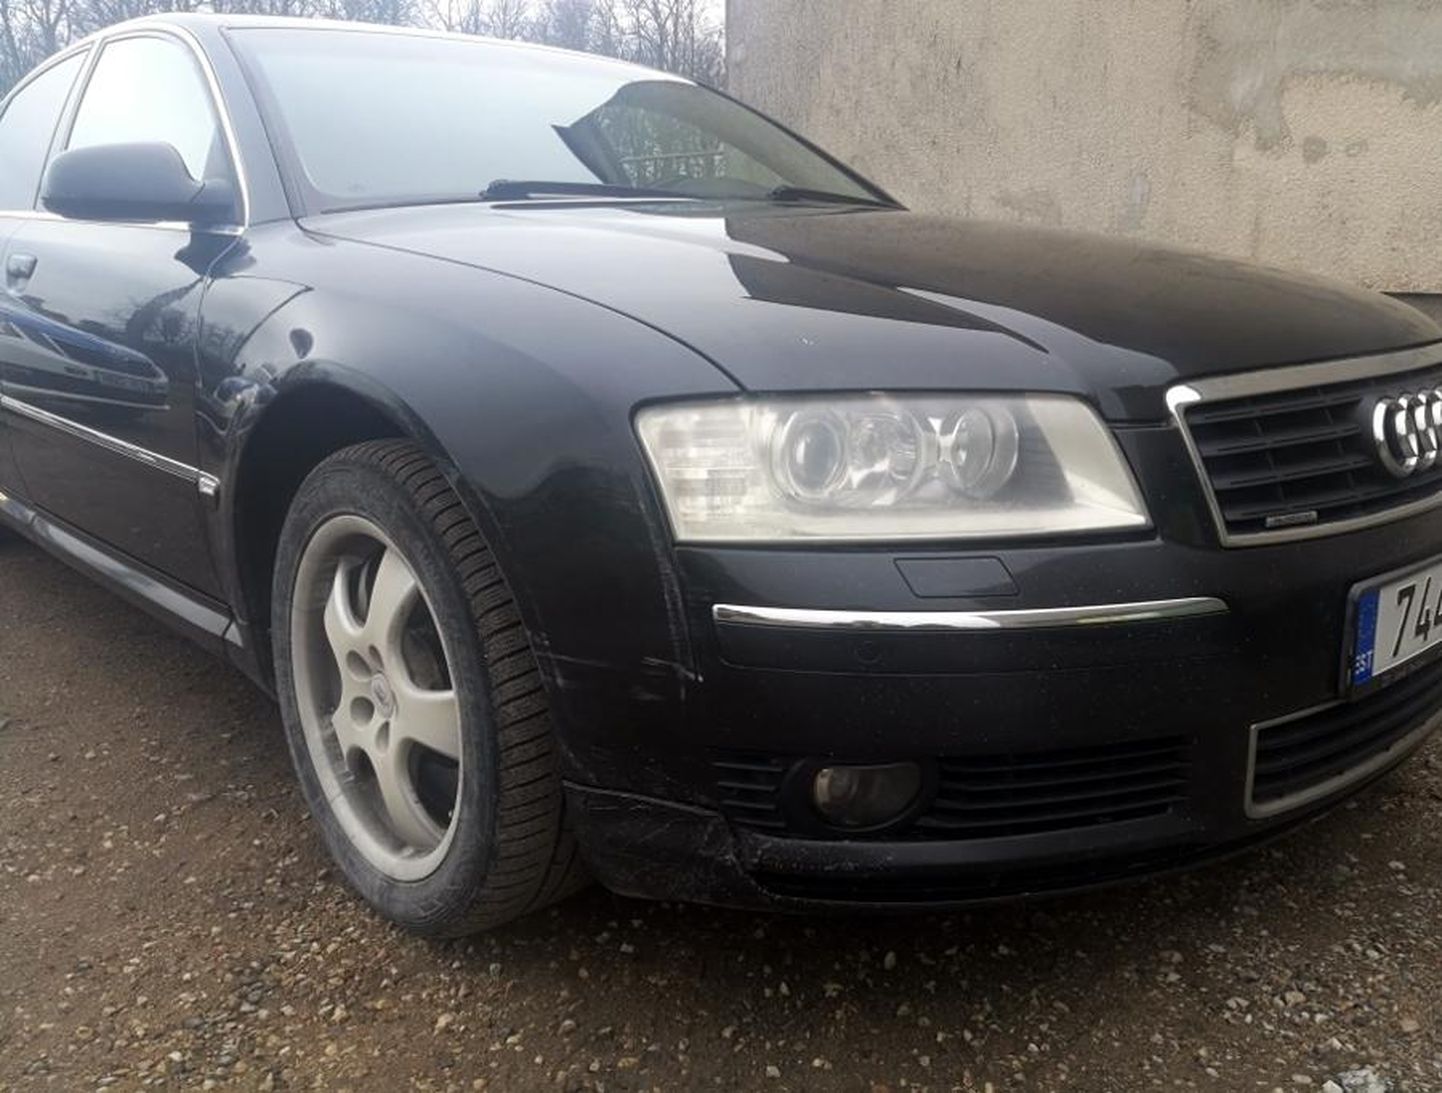 Politsei teisaldas Audi, mille roolis olnud 23-aastane juhiloata mees Keeni küla poe juurde maha jättis.